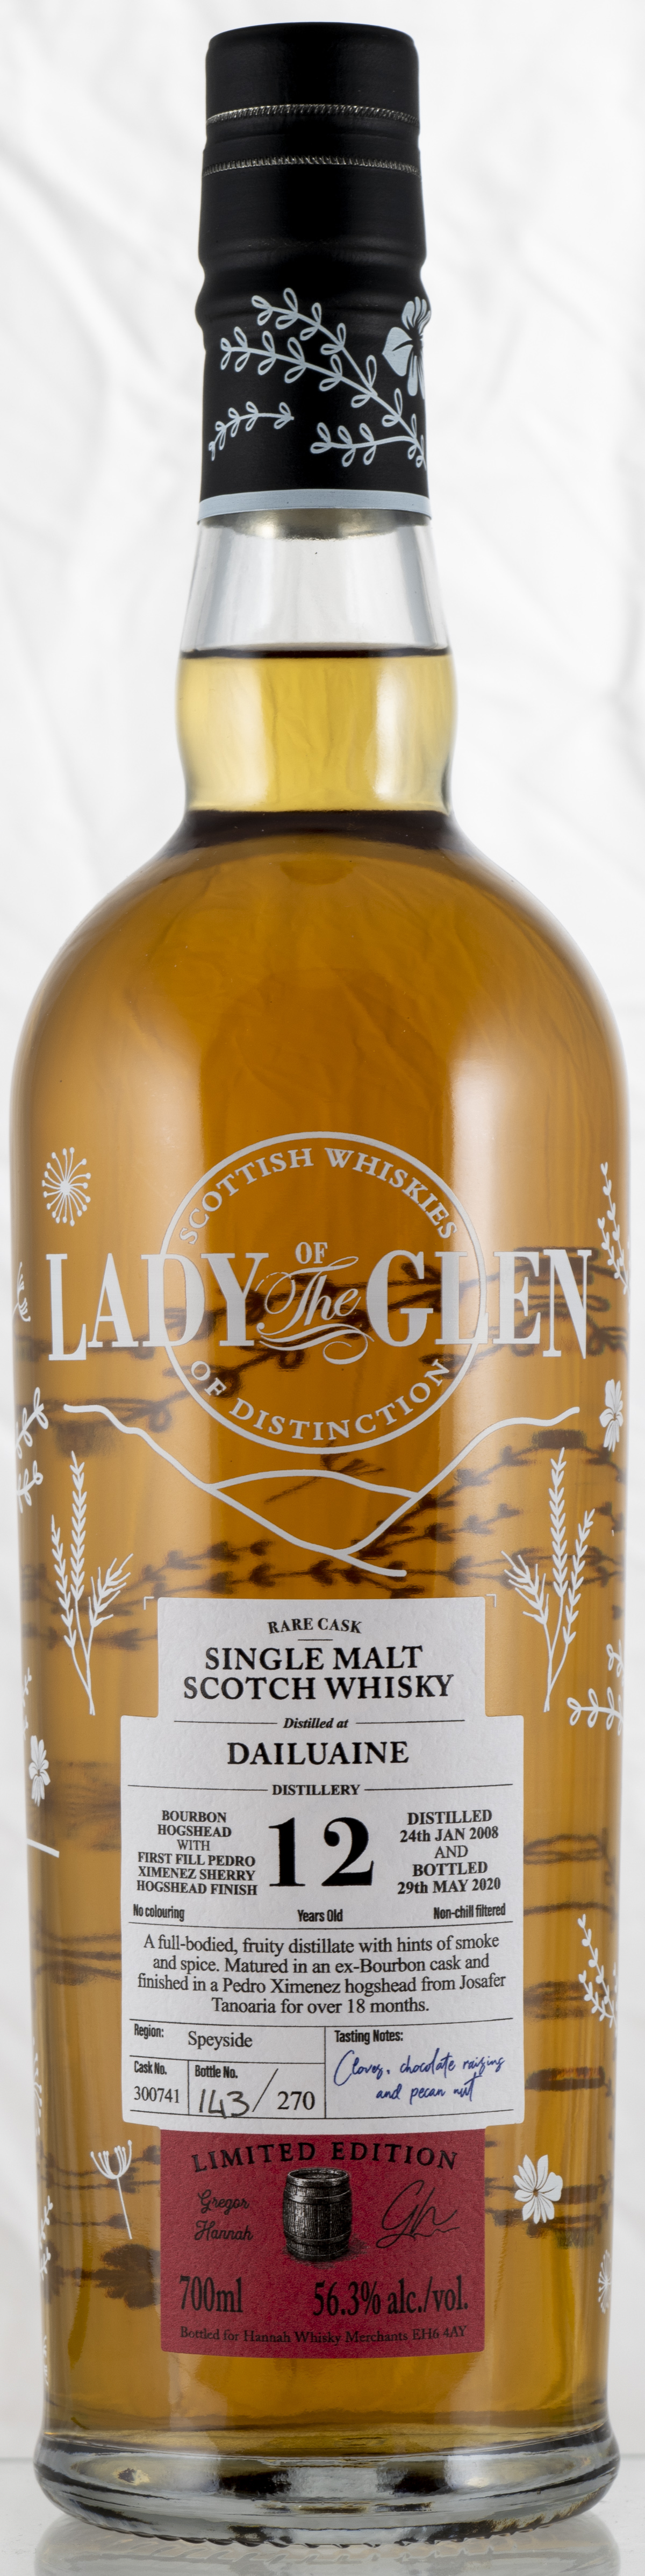 Billede: PHC_4007 - Lady of the Glen Dailuaine 12 - bottle front.jpg